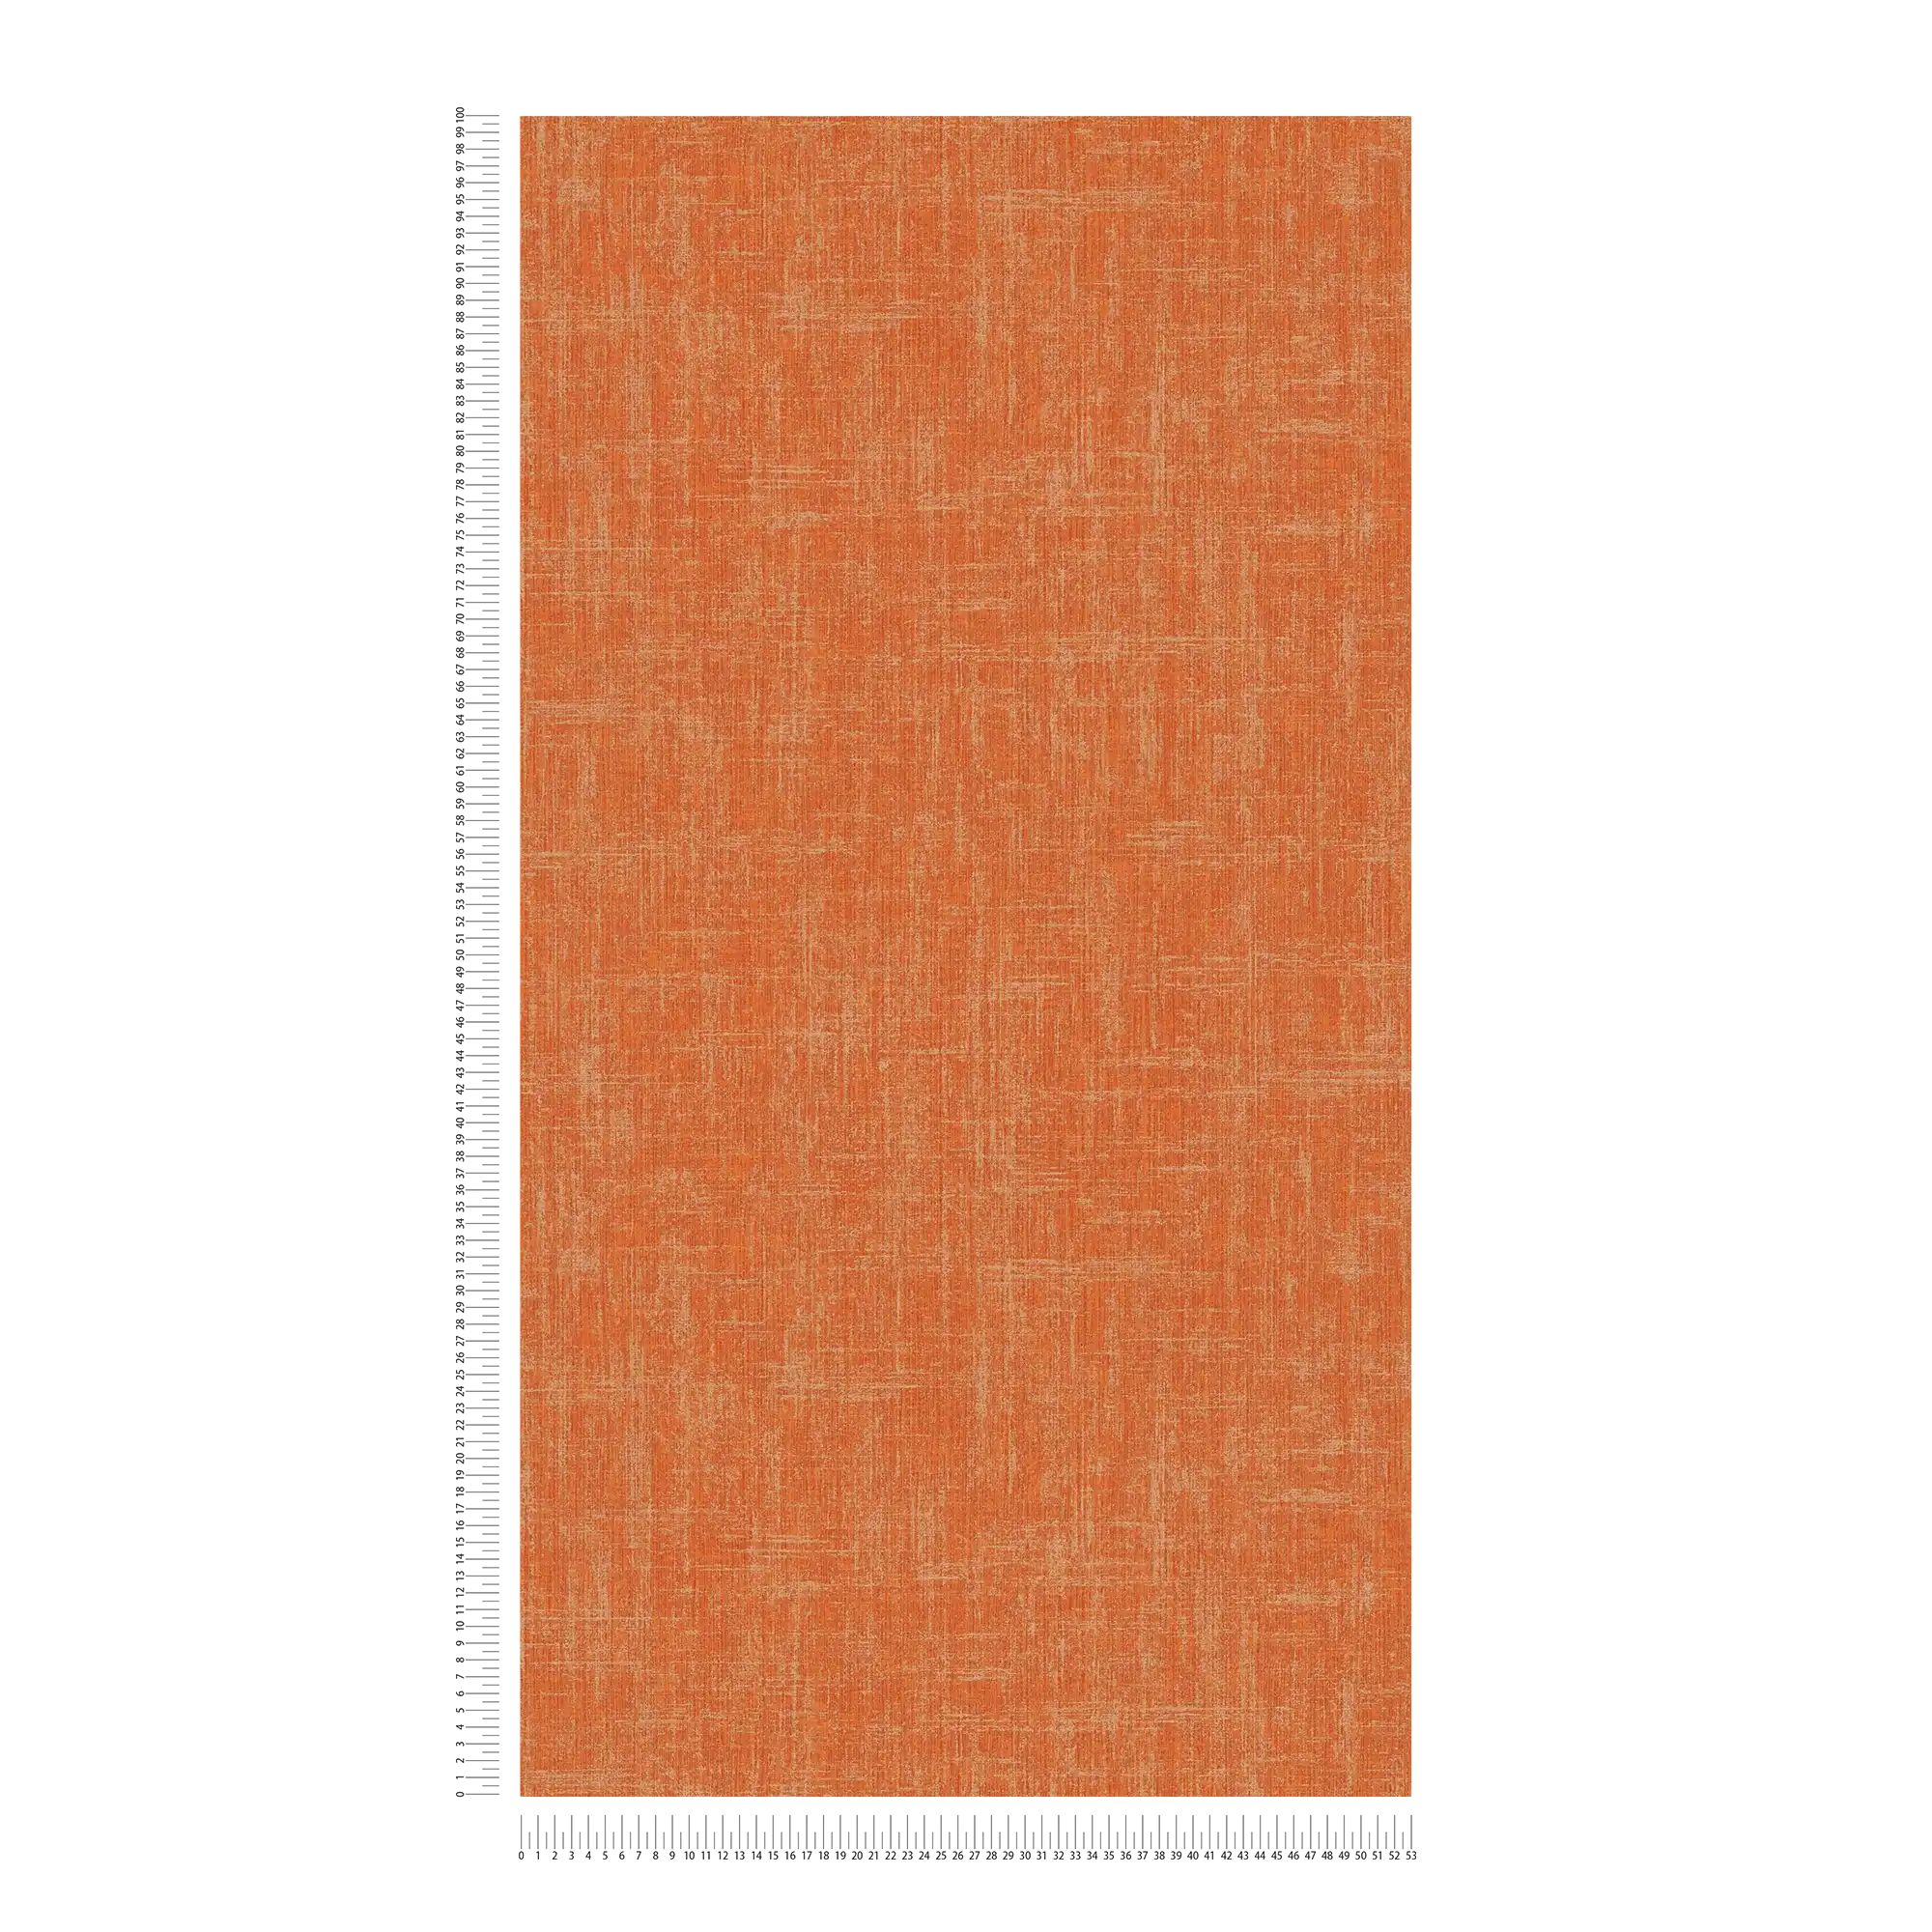             Orange Tapete mit Leinenstruktur Design
        